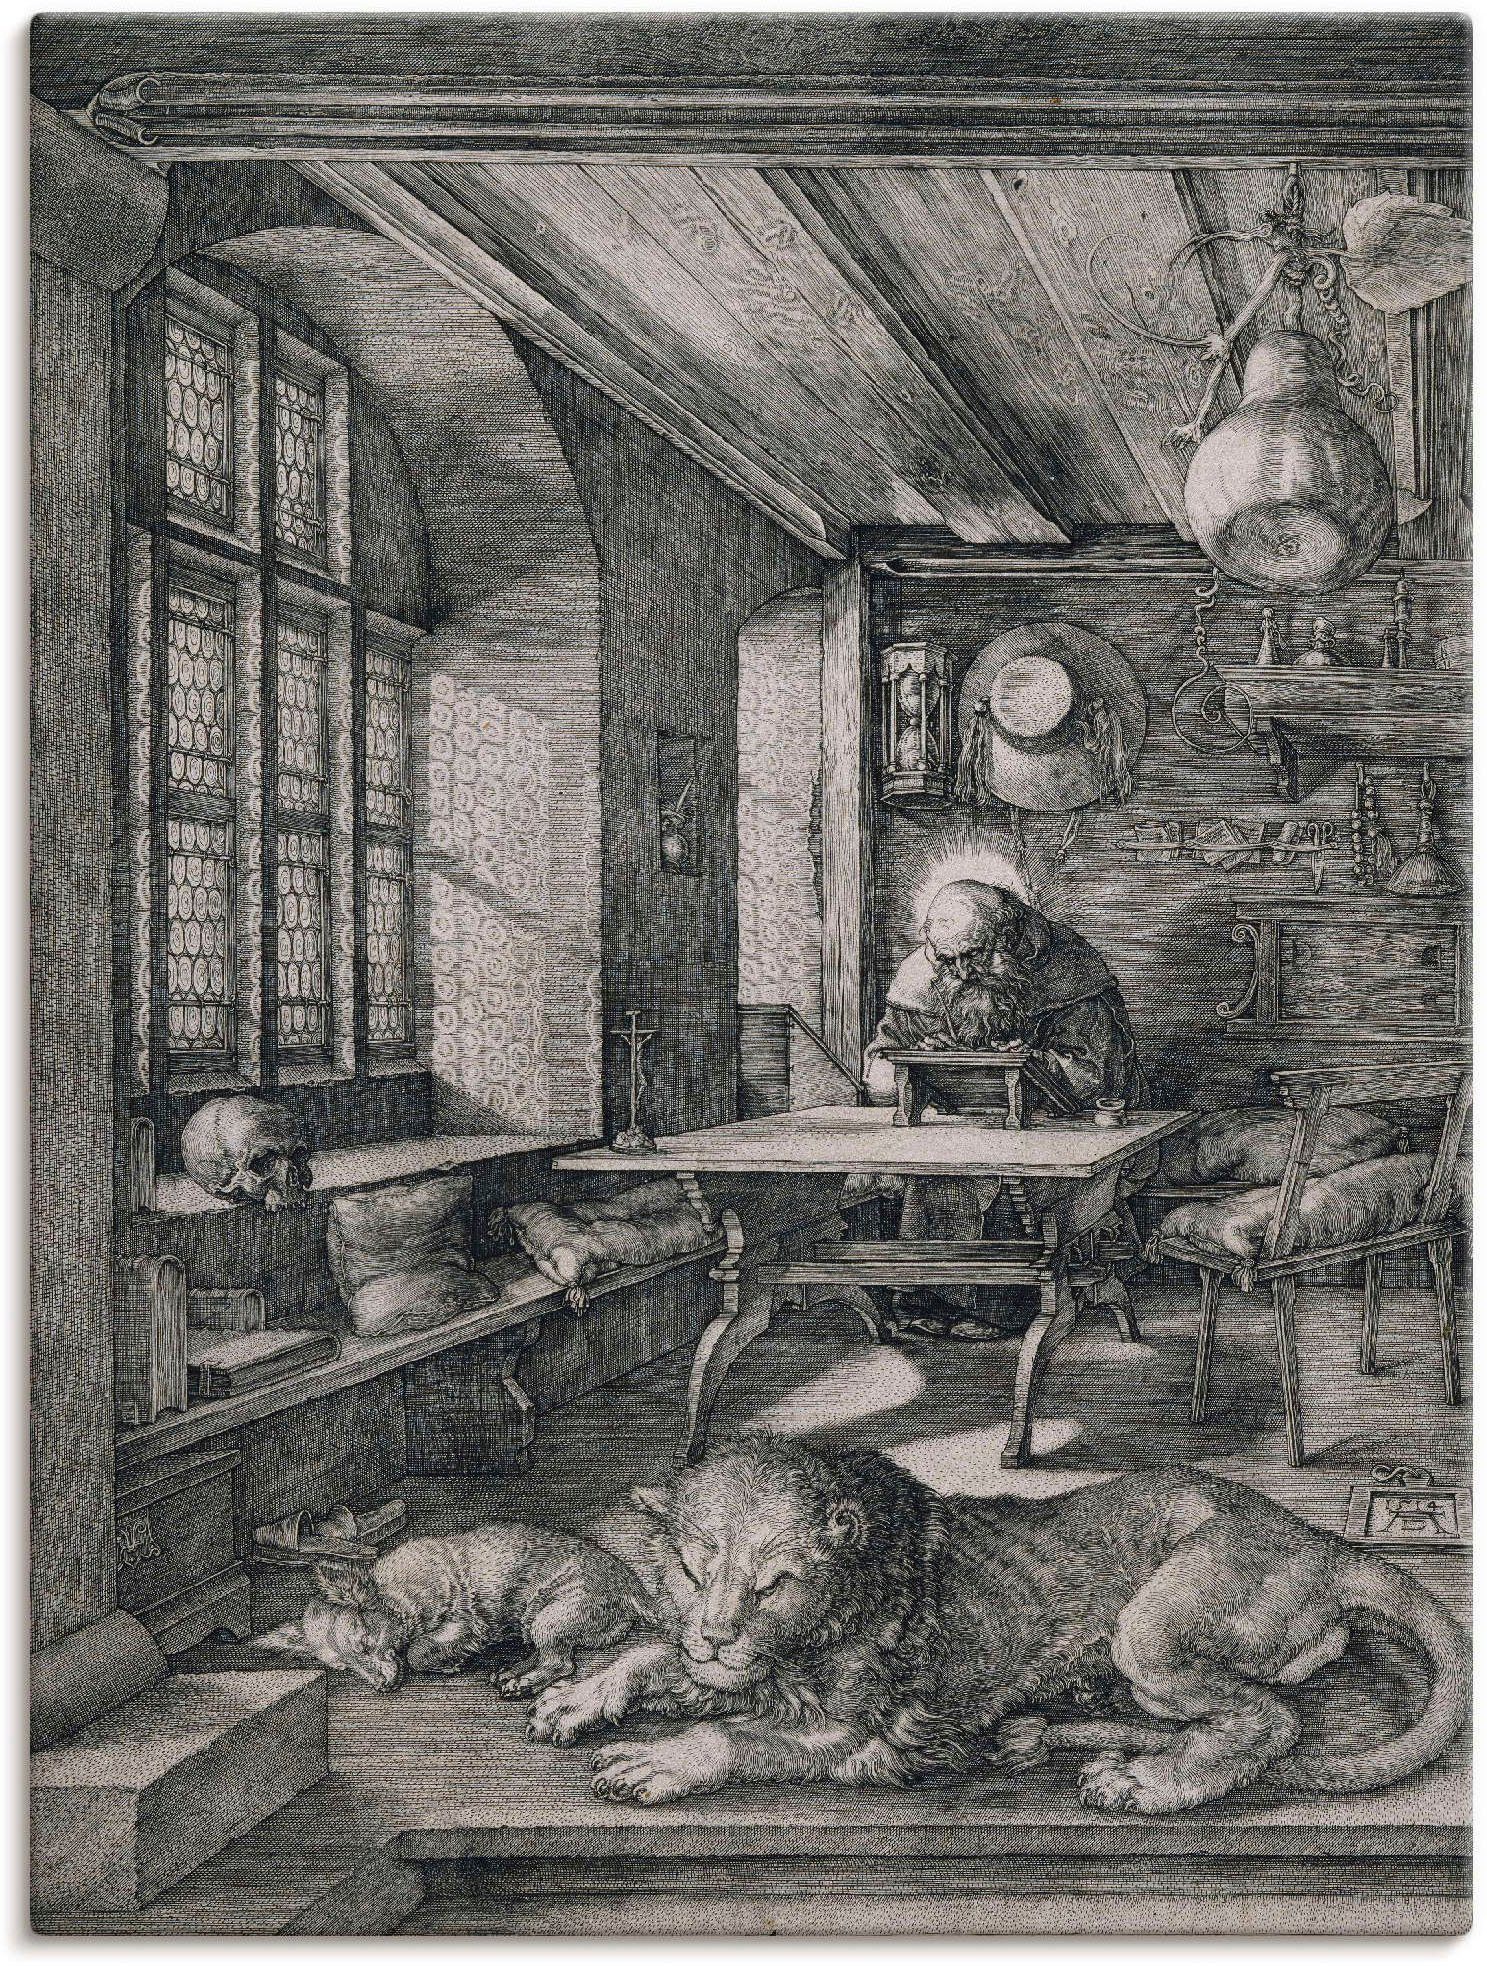 Artland Artprint Hiëronymus in een kist. 1514 in vele afmetingen & productsoorten -artprint op linnen, poster, muursticker / wandfolie ook geschikt voor de badkamer (1 stuk)